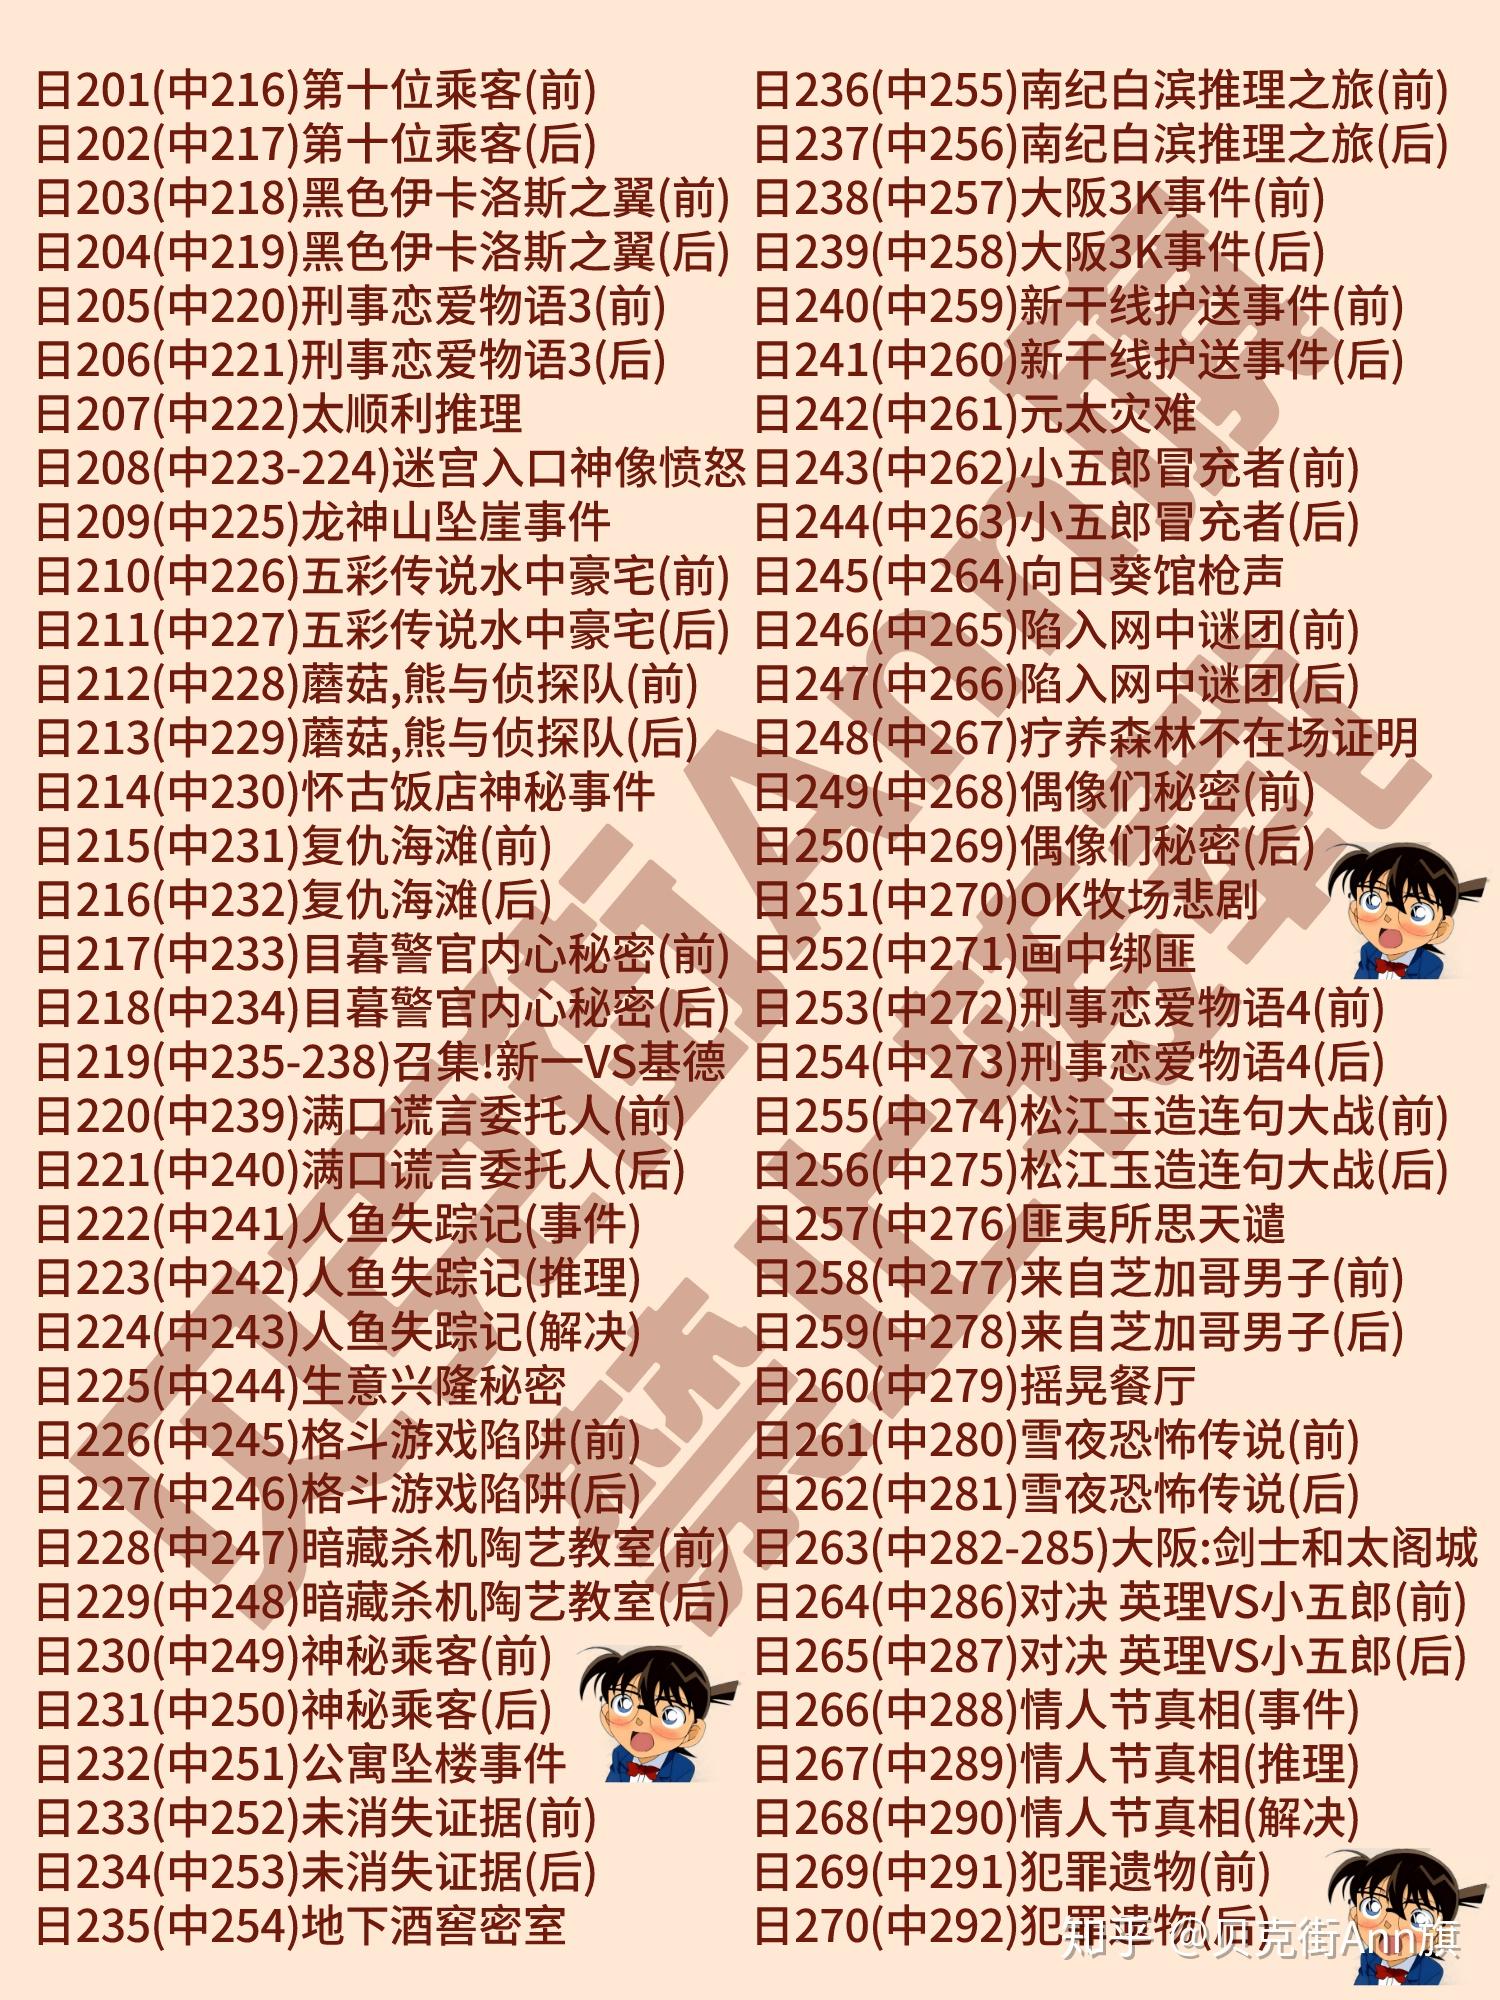 名侦探柯南tv动画剧集大全(大字版,日本官方&海外集数对照,2020更新)